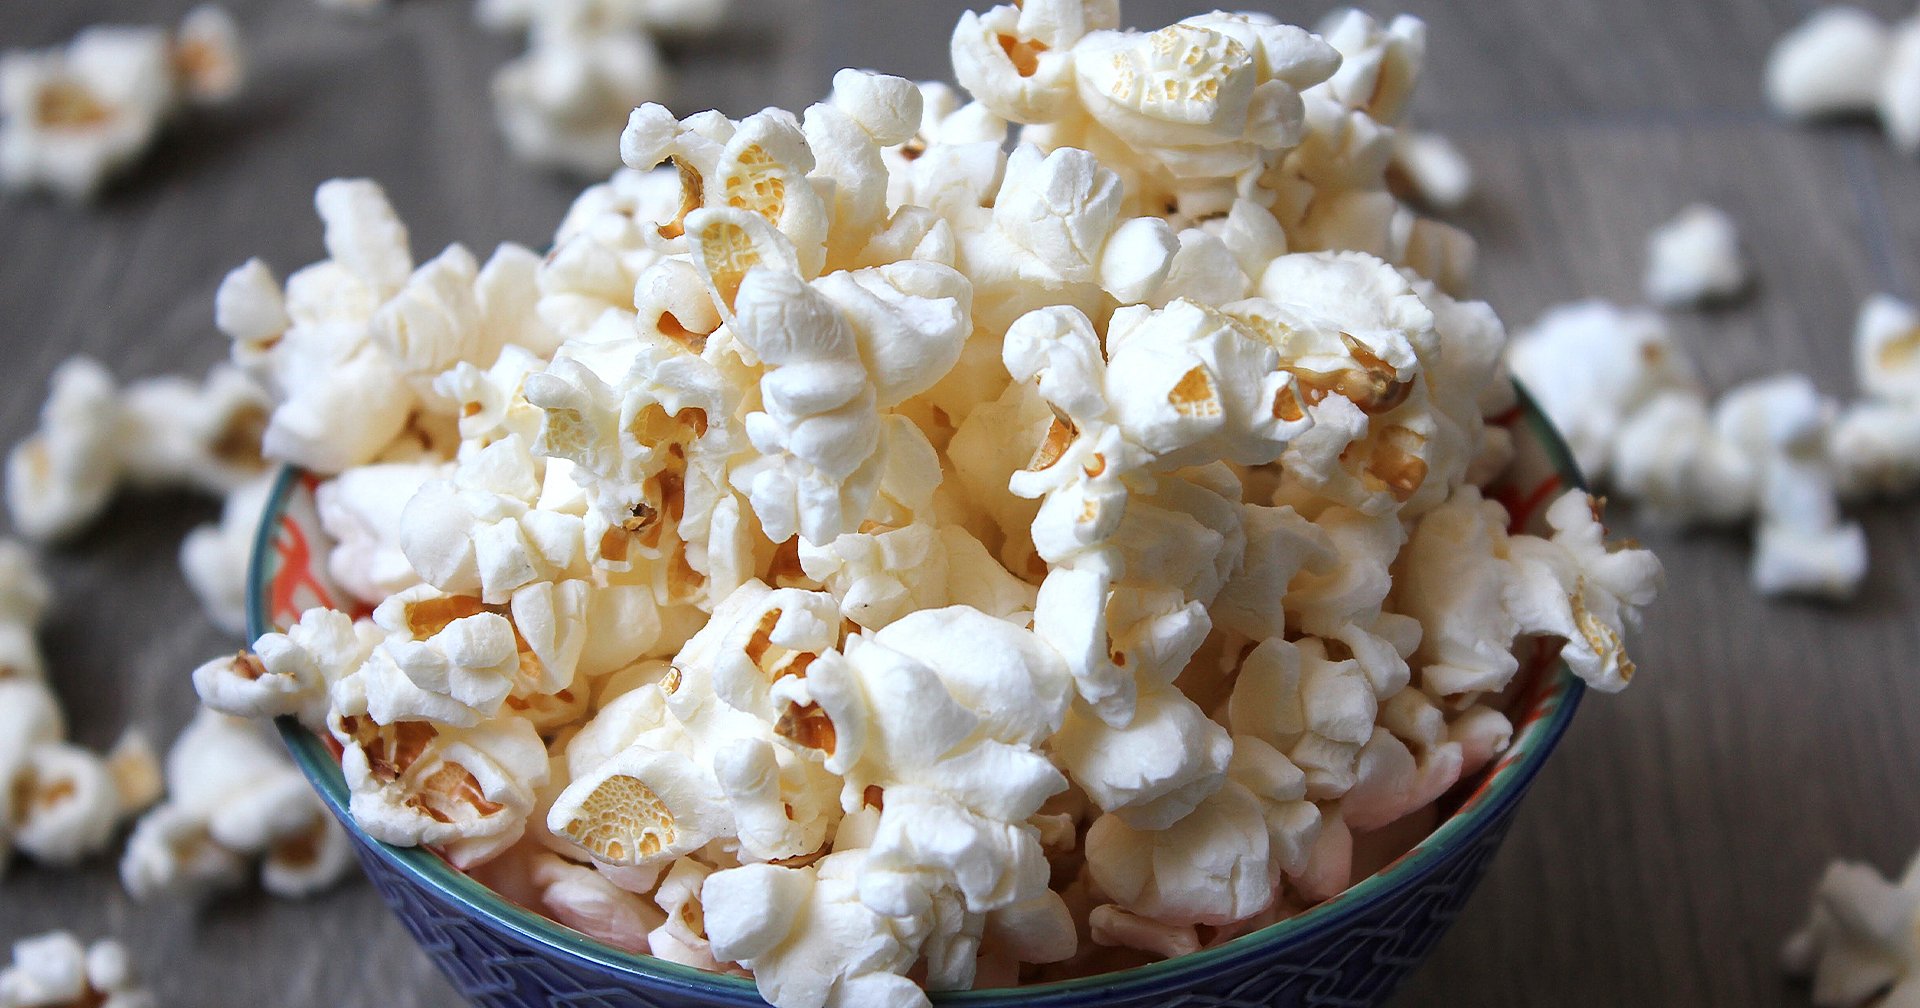 รู้หรือไม่ ข้าวโพดคั่ว (Popcorn) เป็นของว่างมีคุณประโยชน์ที่สุด และ 10 เหตุผลที่เราควรกิน